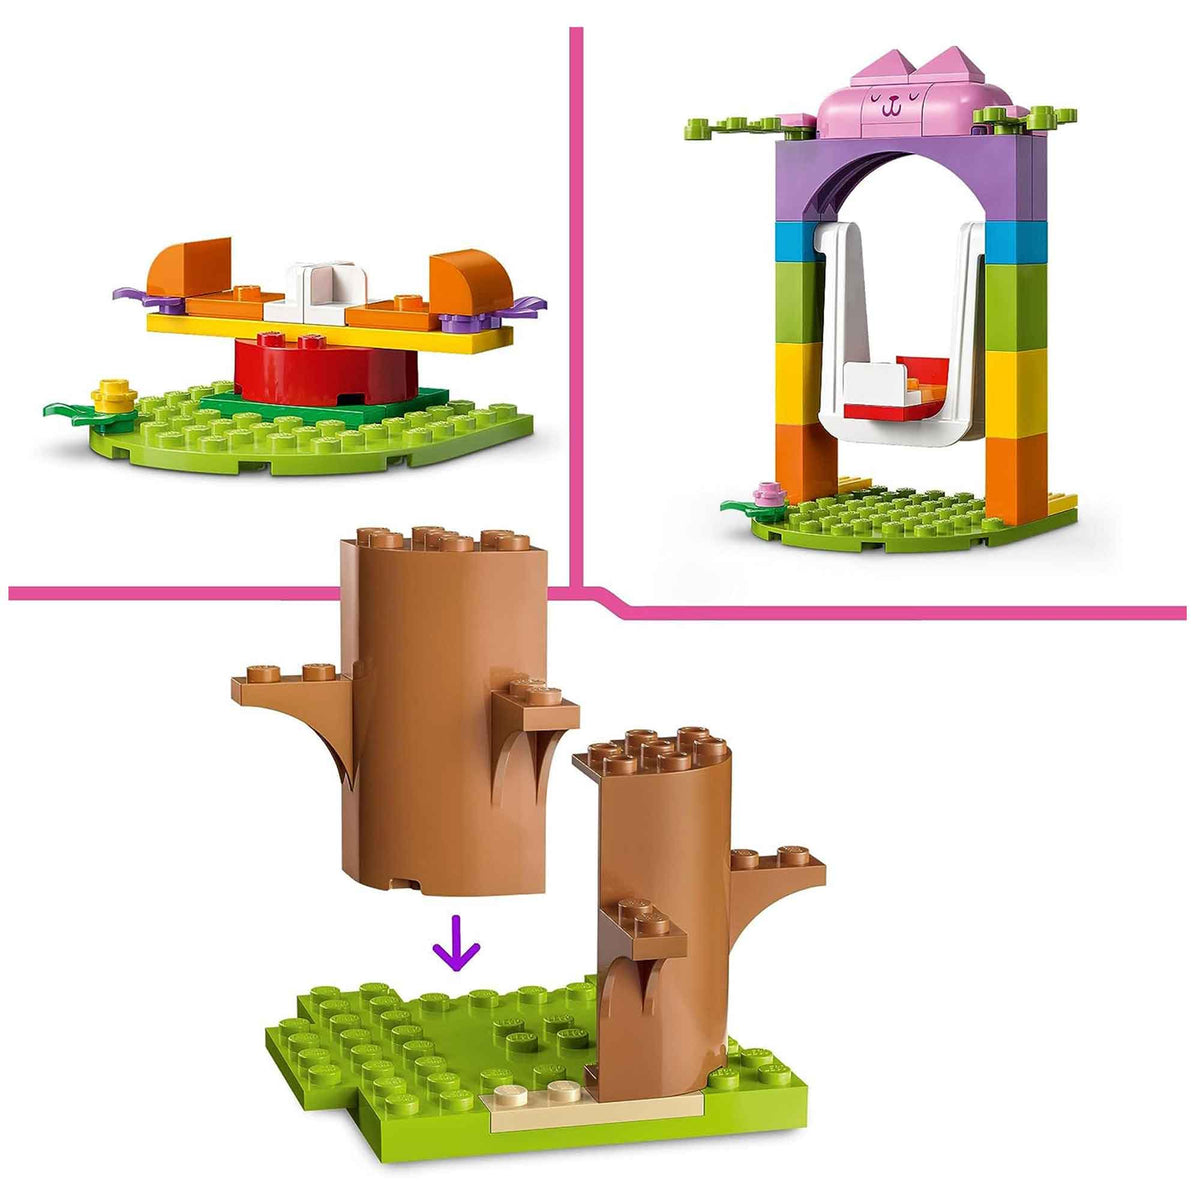 LEGO Gabby&#39;s Dollhouse  Kitty Fairy&#39;s Garden Party Set